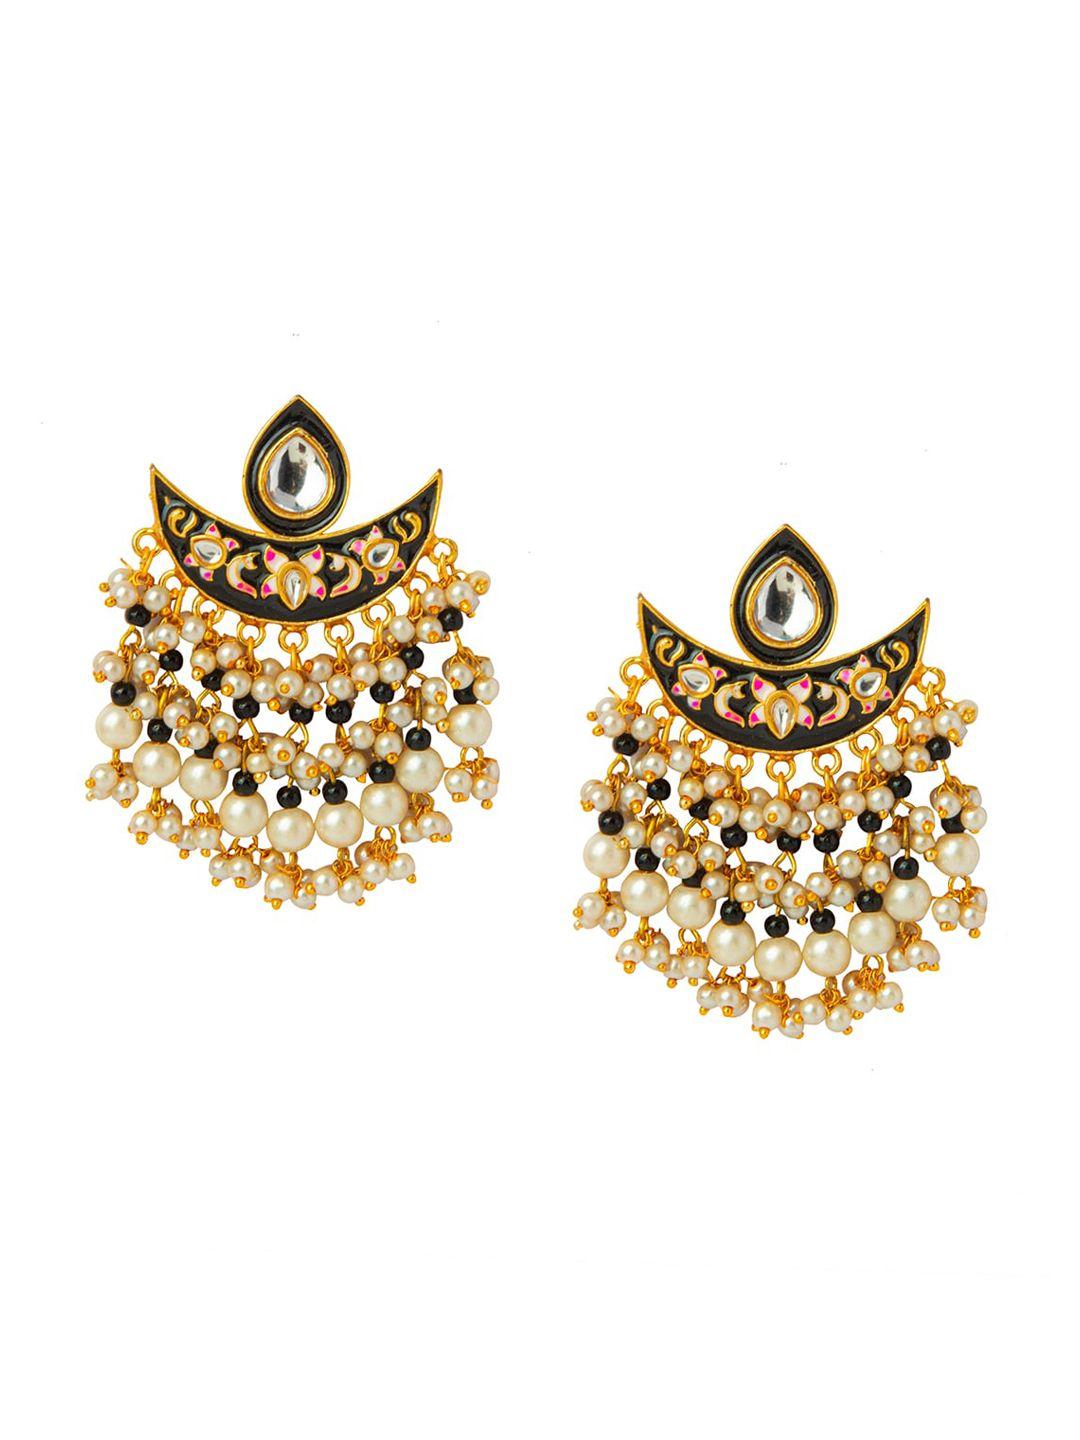 shining jewel - by shivansh gold-toned contemporary drop earrings